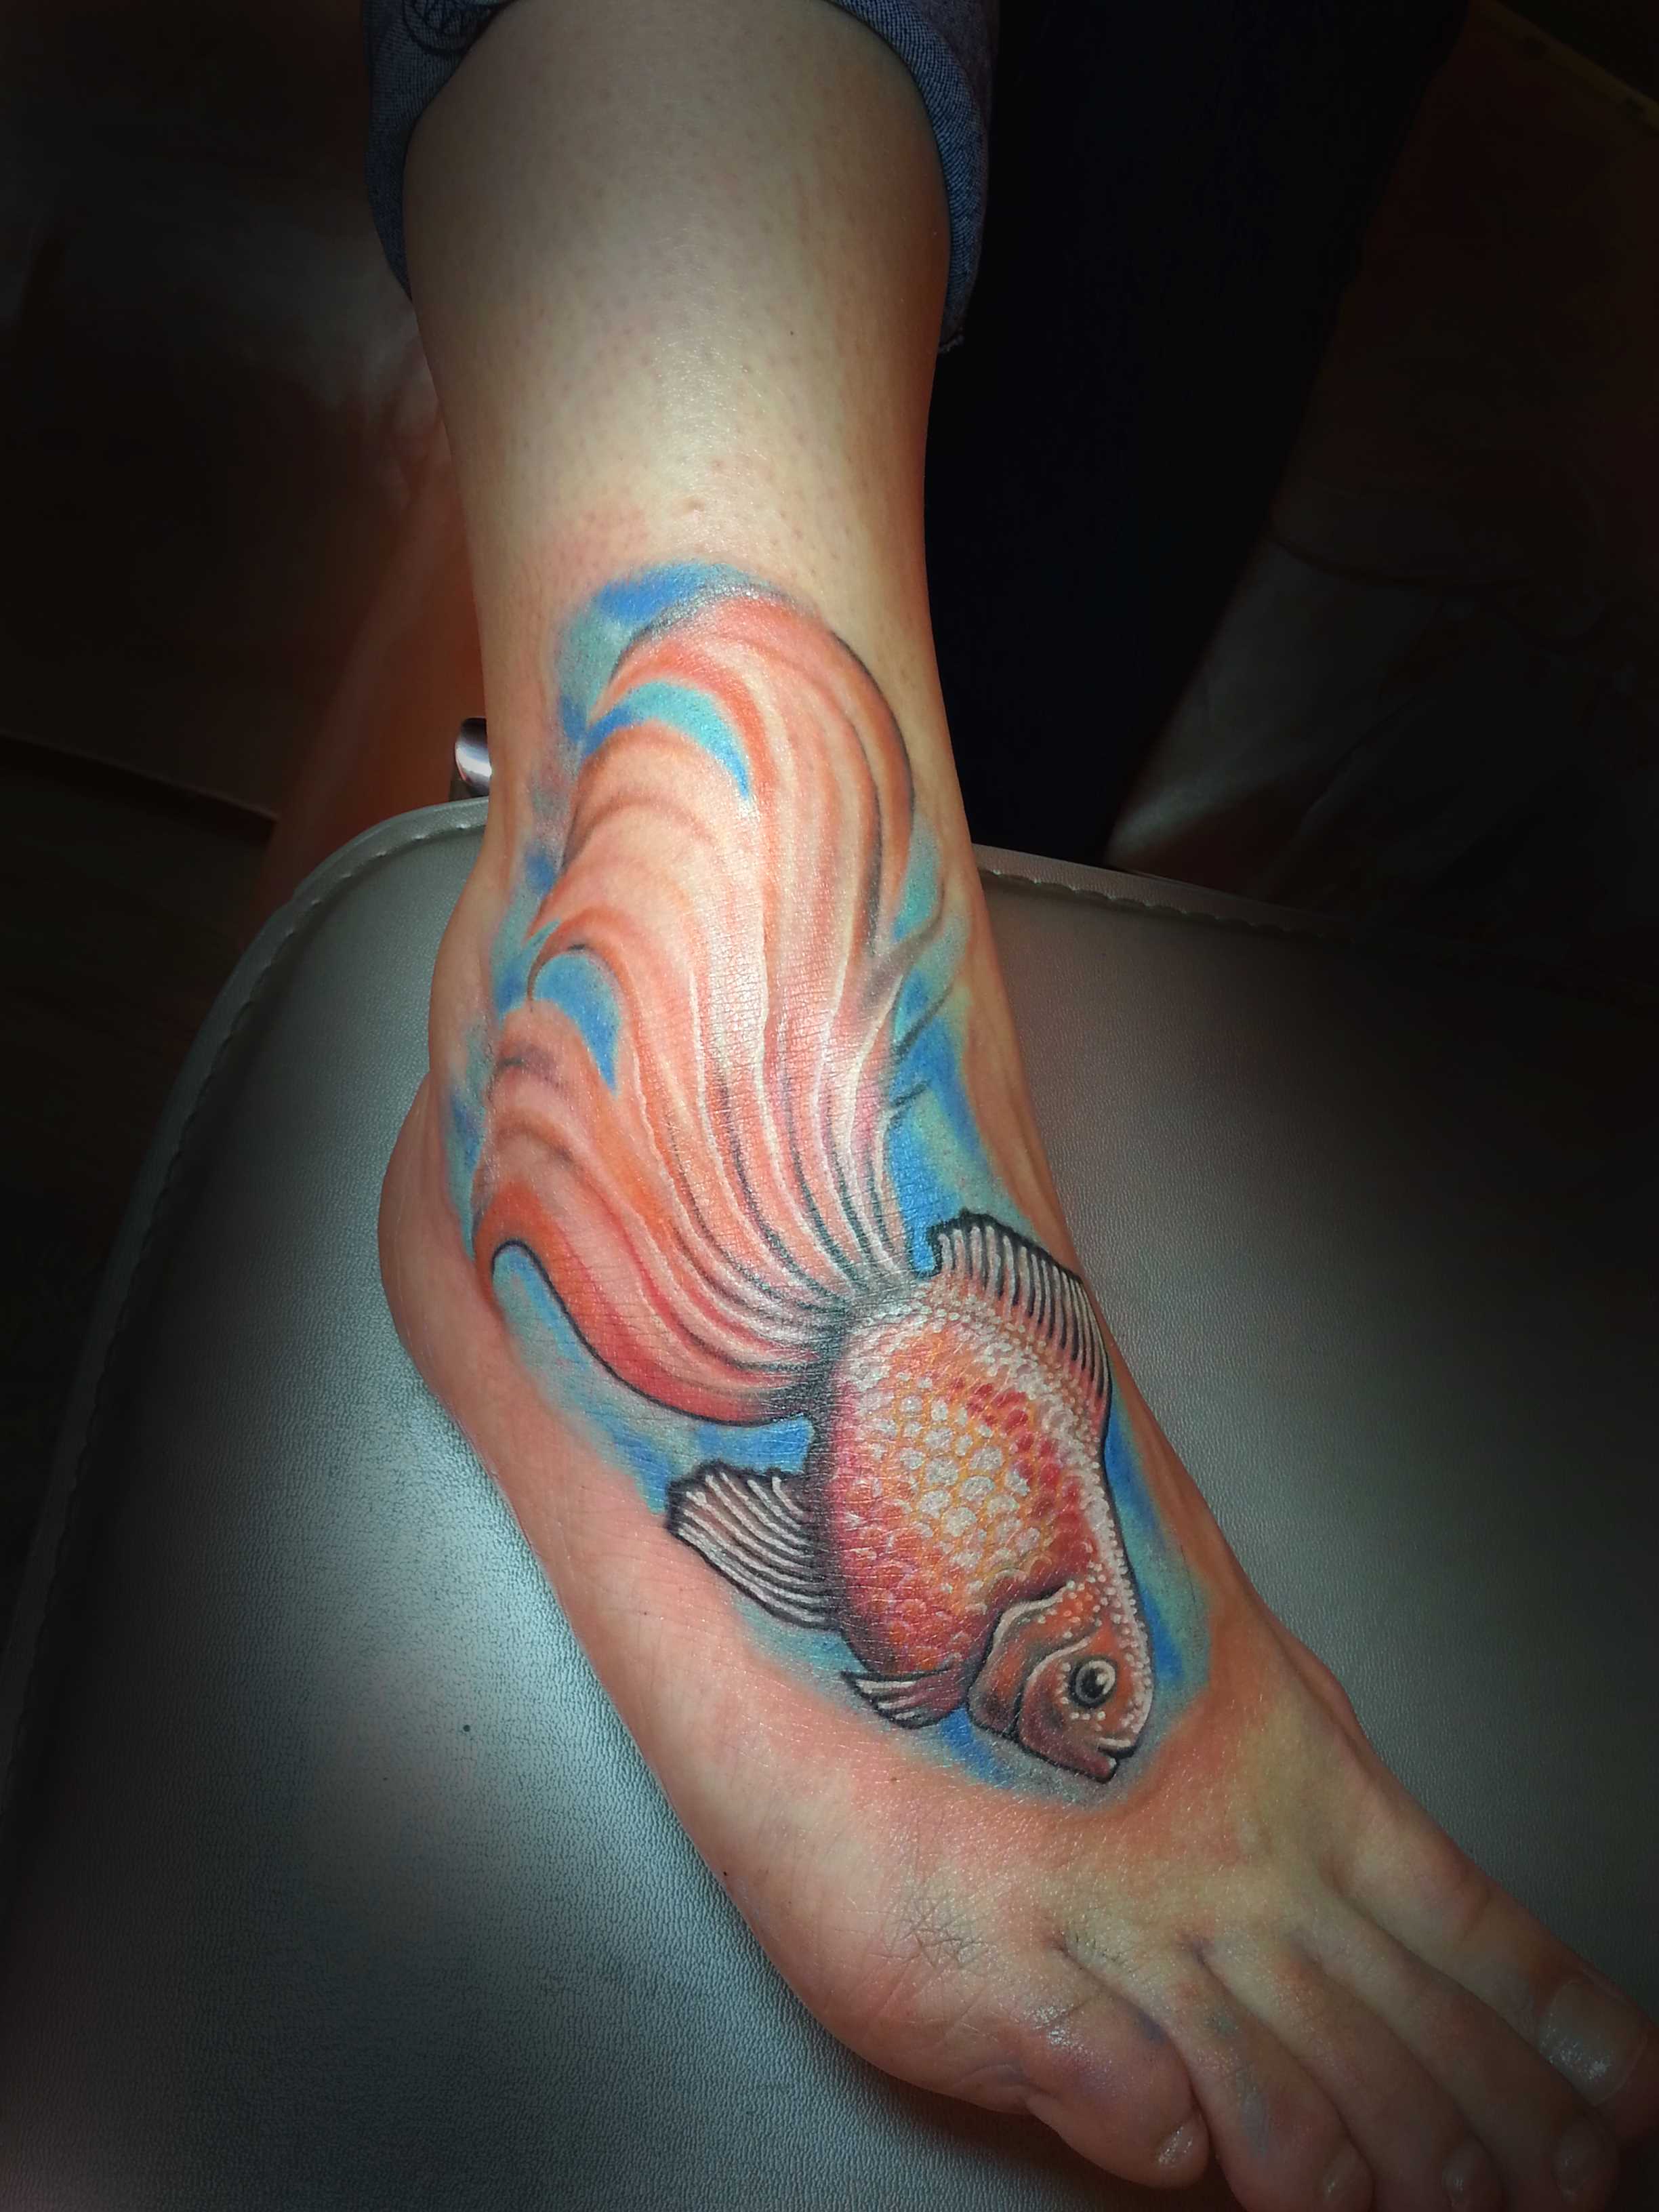 A tatuagem no pé da menina - peixinho